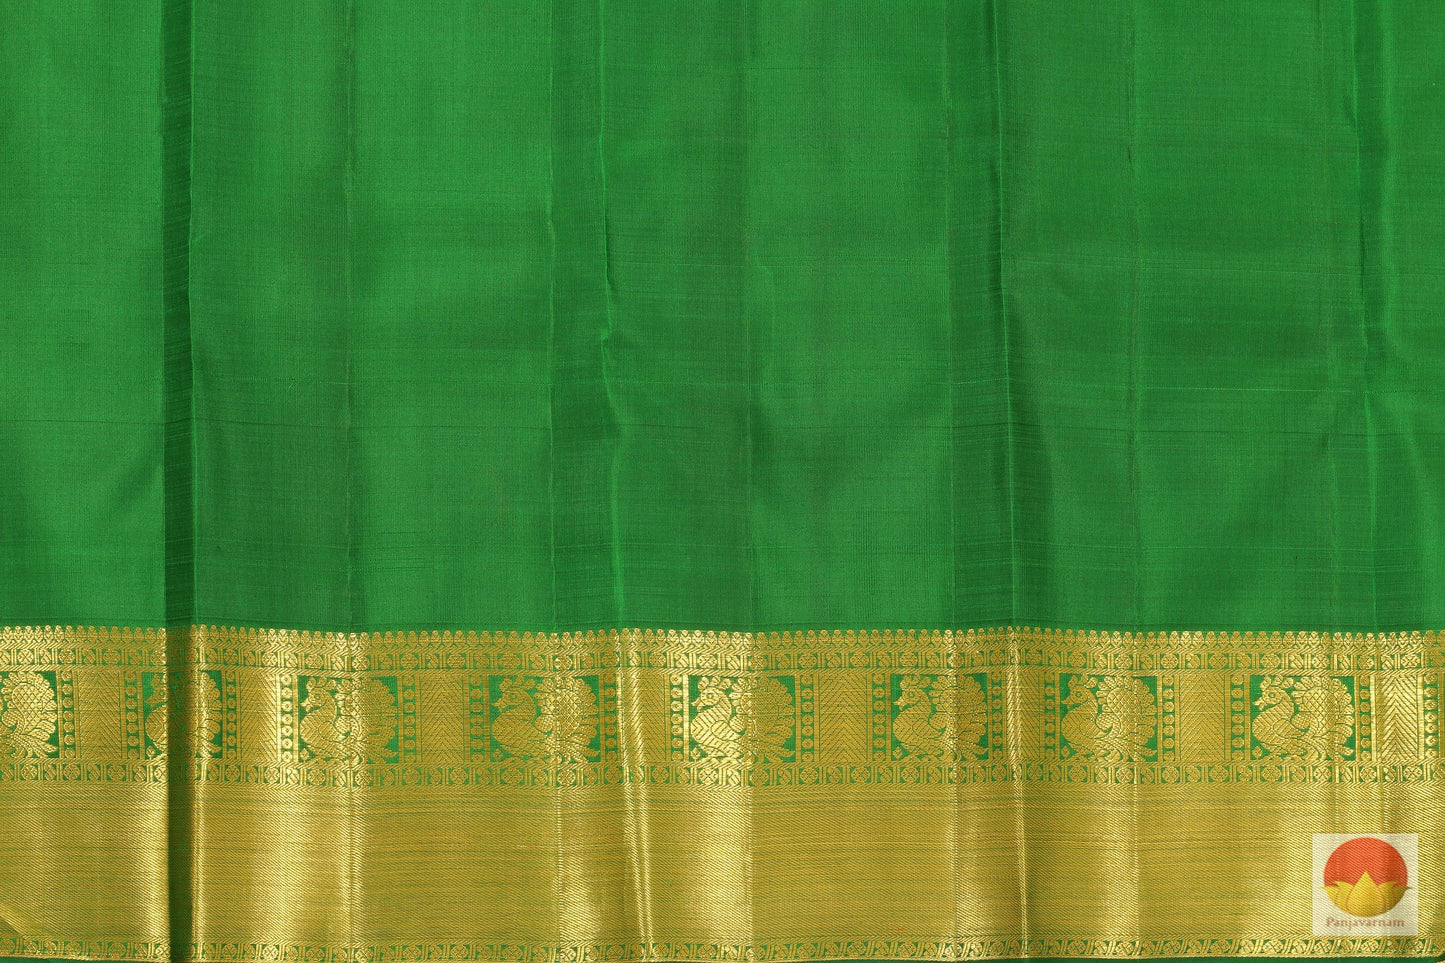 Traditional Design - Handwoven Pure Silk Kanjivaram Saree - Pure Zari - PV G 1955 Archives - Silk Sari - Panjavarnam